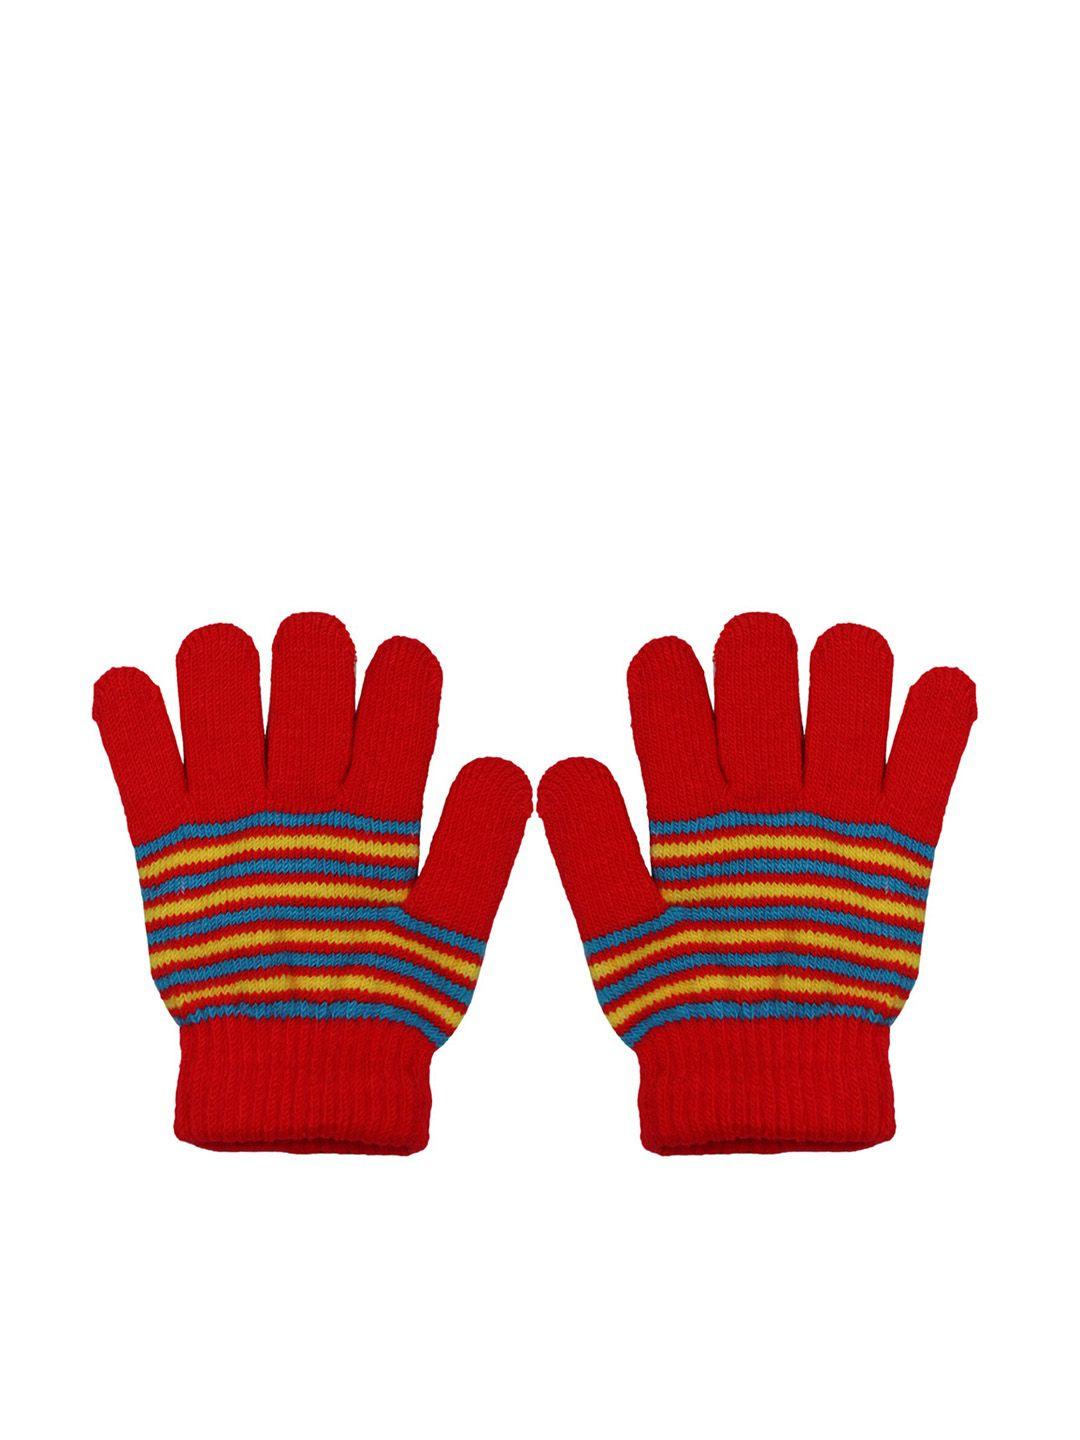 baesd kids woollen striped winter gloves